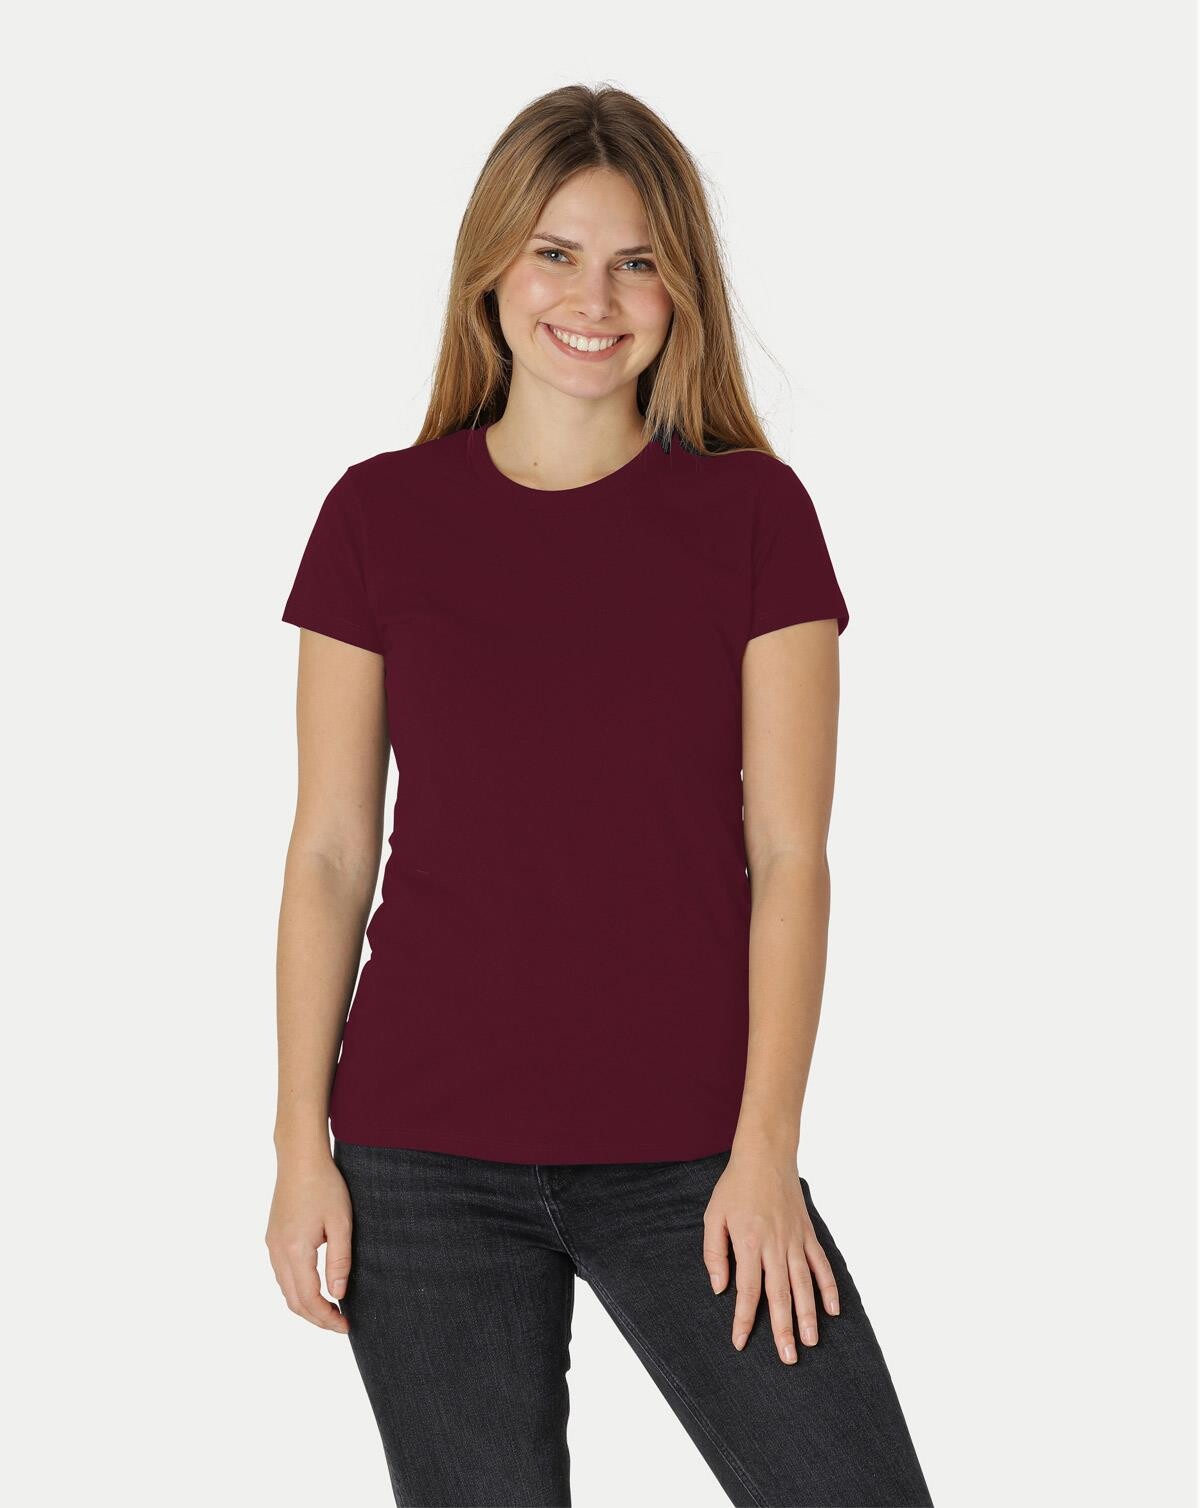 Neutral Økologisk Dame Tætsiddende T-Shirt (Bordeaux, XL)